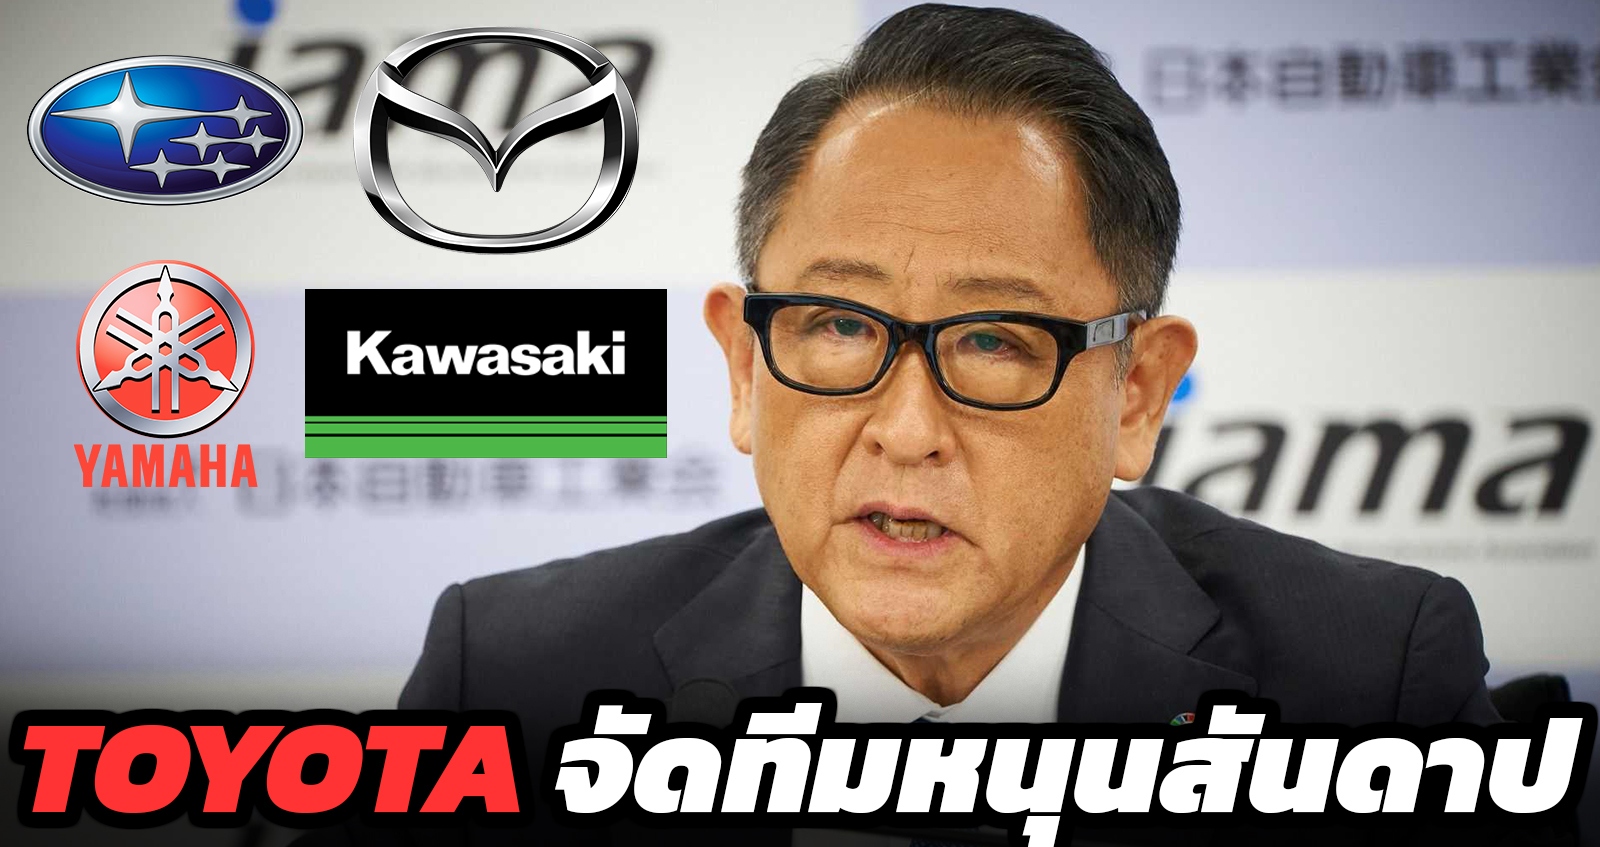 TOYOTA ตั้งทีม สนับสนุนเครื่องยนต์สันดาป ร่วมกับ Subaru,MAZDA,Kawasaki,YAMAHA